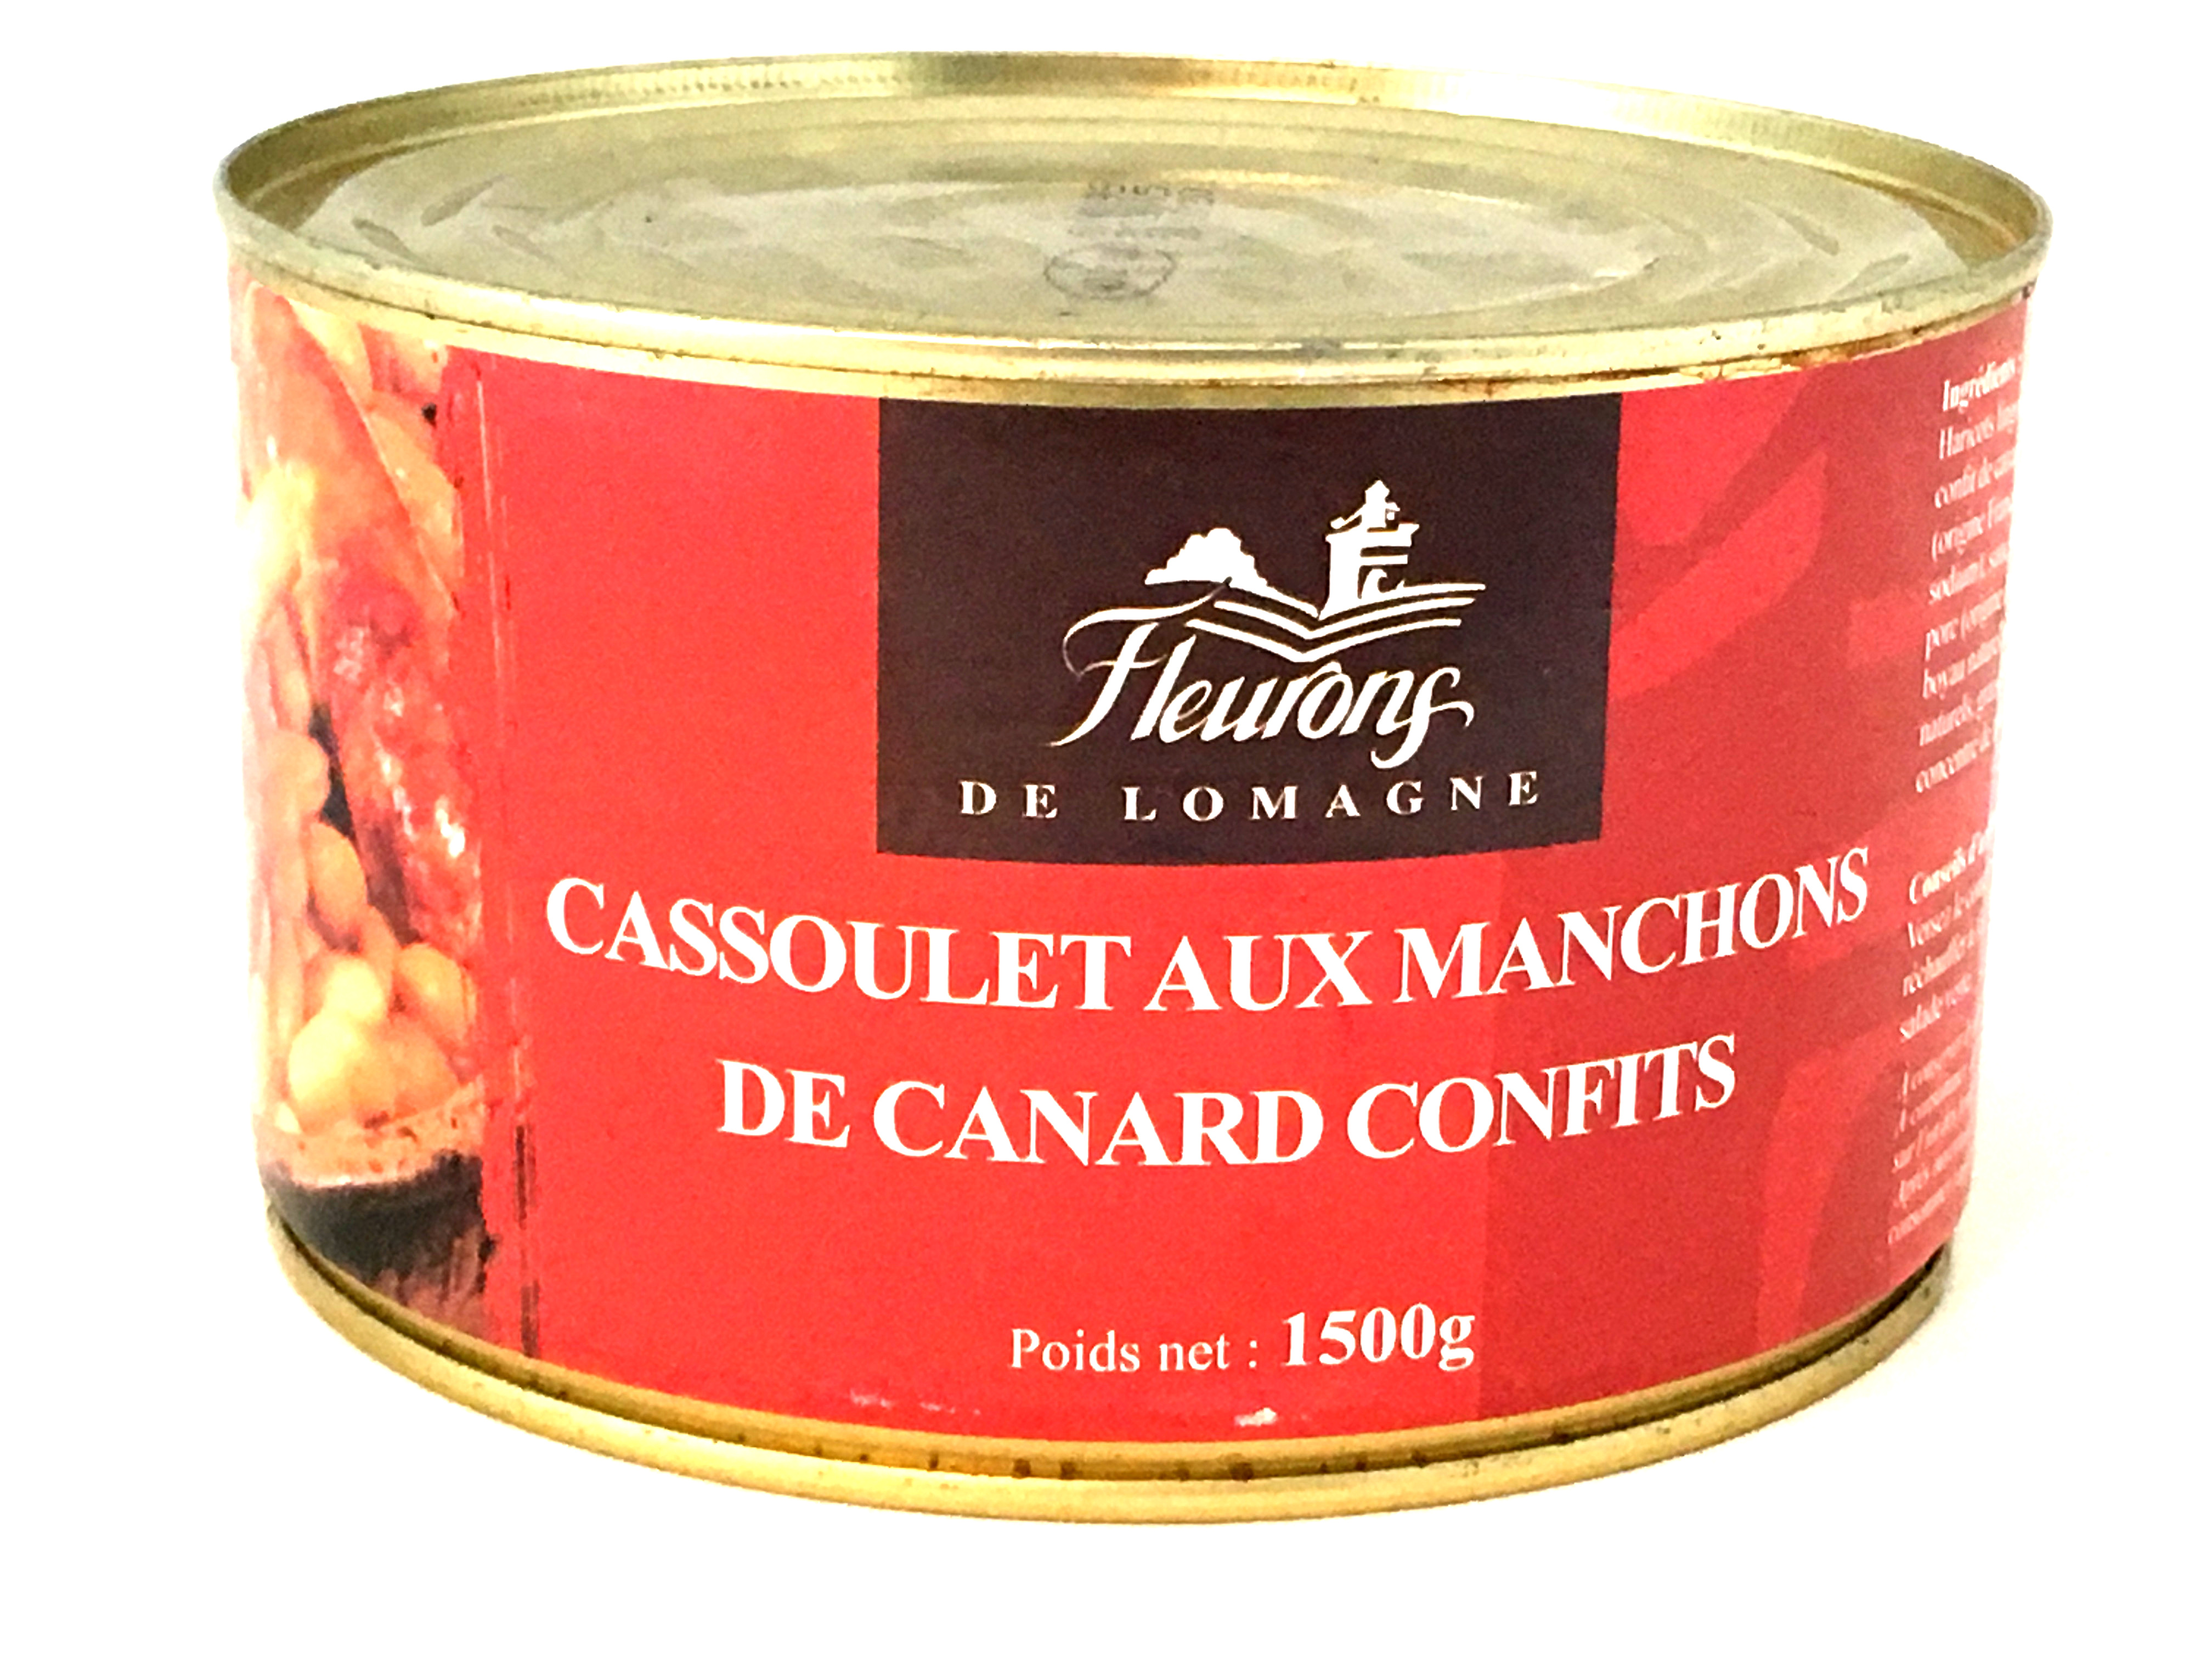 Cassoulet aux manchons de canard confits 1500g (boîte fer)